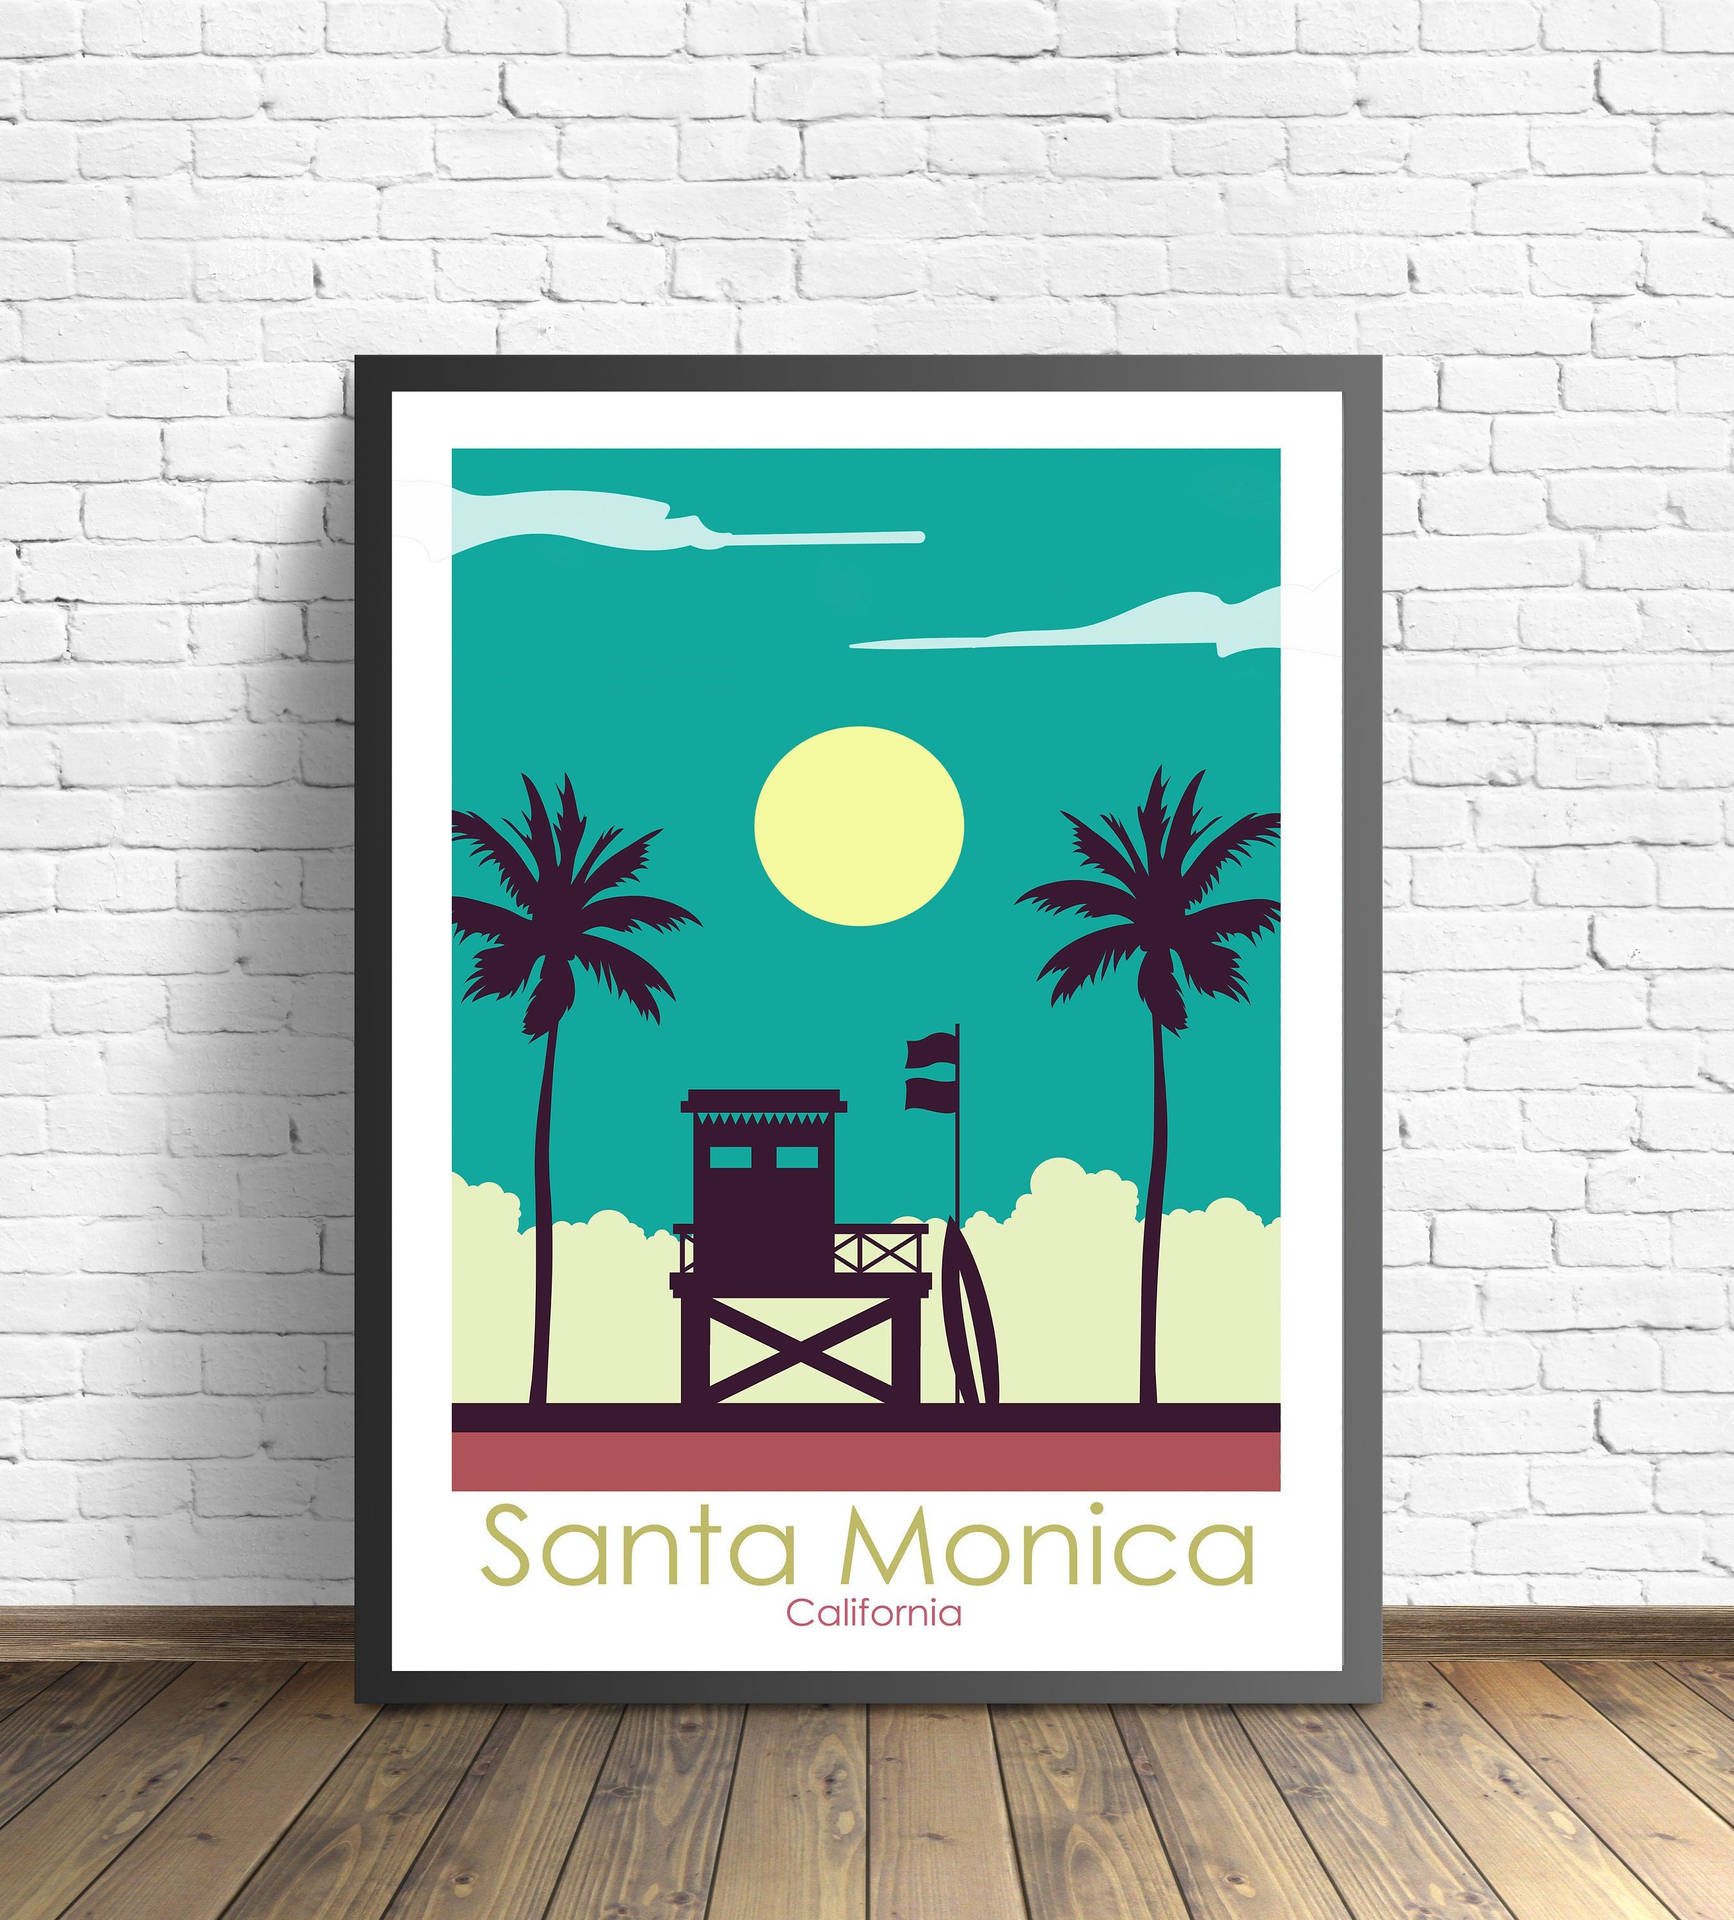 Santa Monica Gulv Plakat Design: En smukt udsmykket design, der afbilderhavet og himlen med træer i solnedgangen. Wallpaper